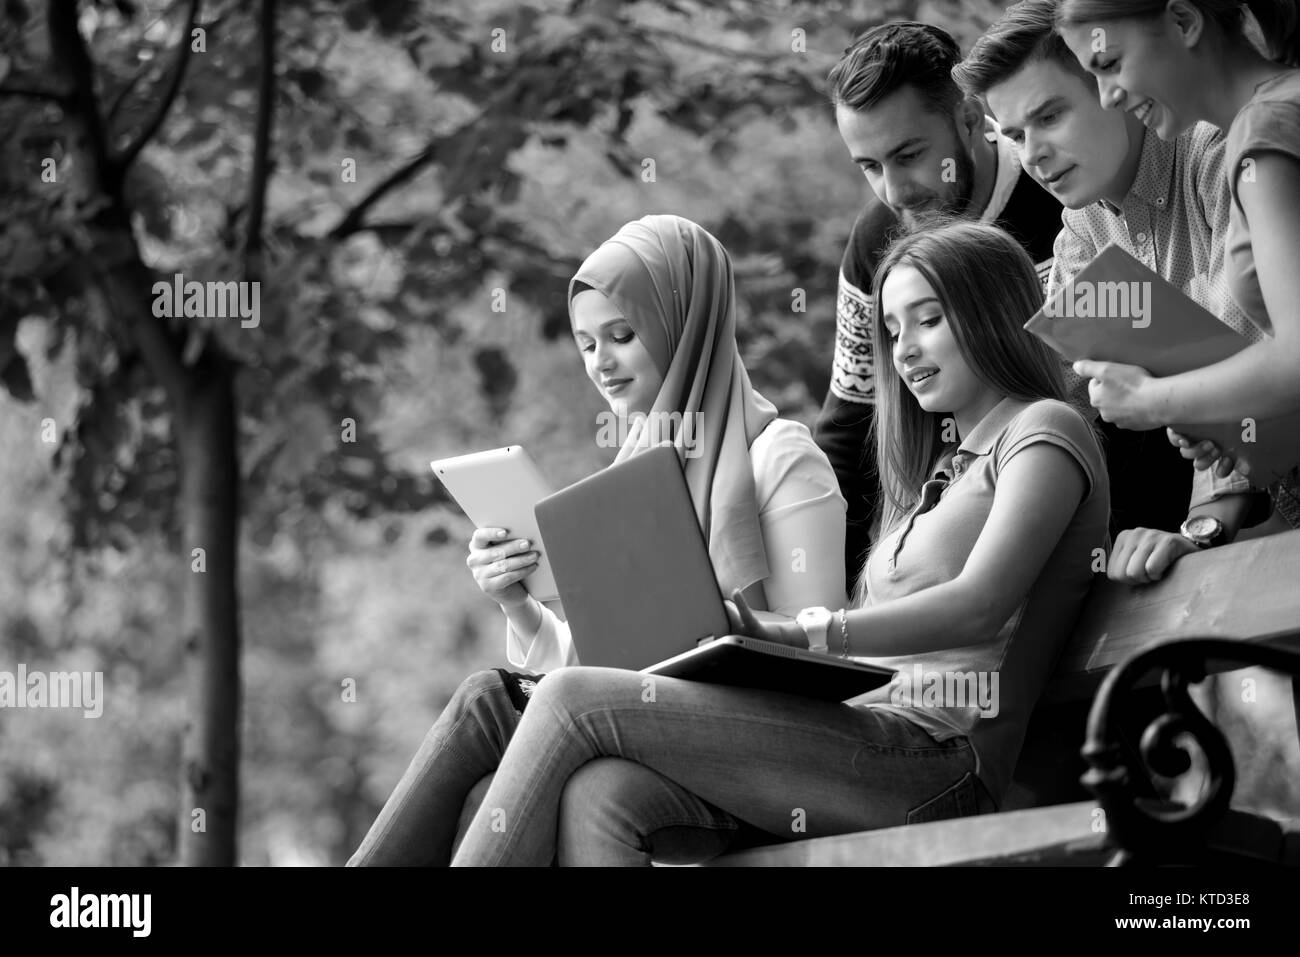 Groupe de jeunes à l'aide d'ordinateur portable et tablette sur un banc de parc, s'amuser, parler, sortir Banque D'Images